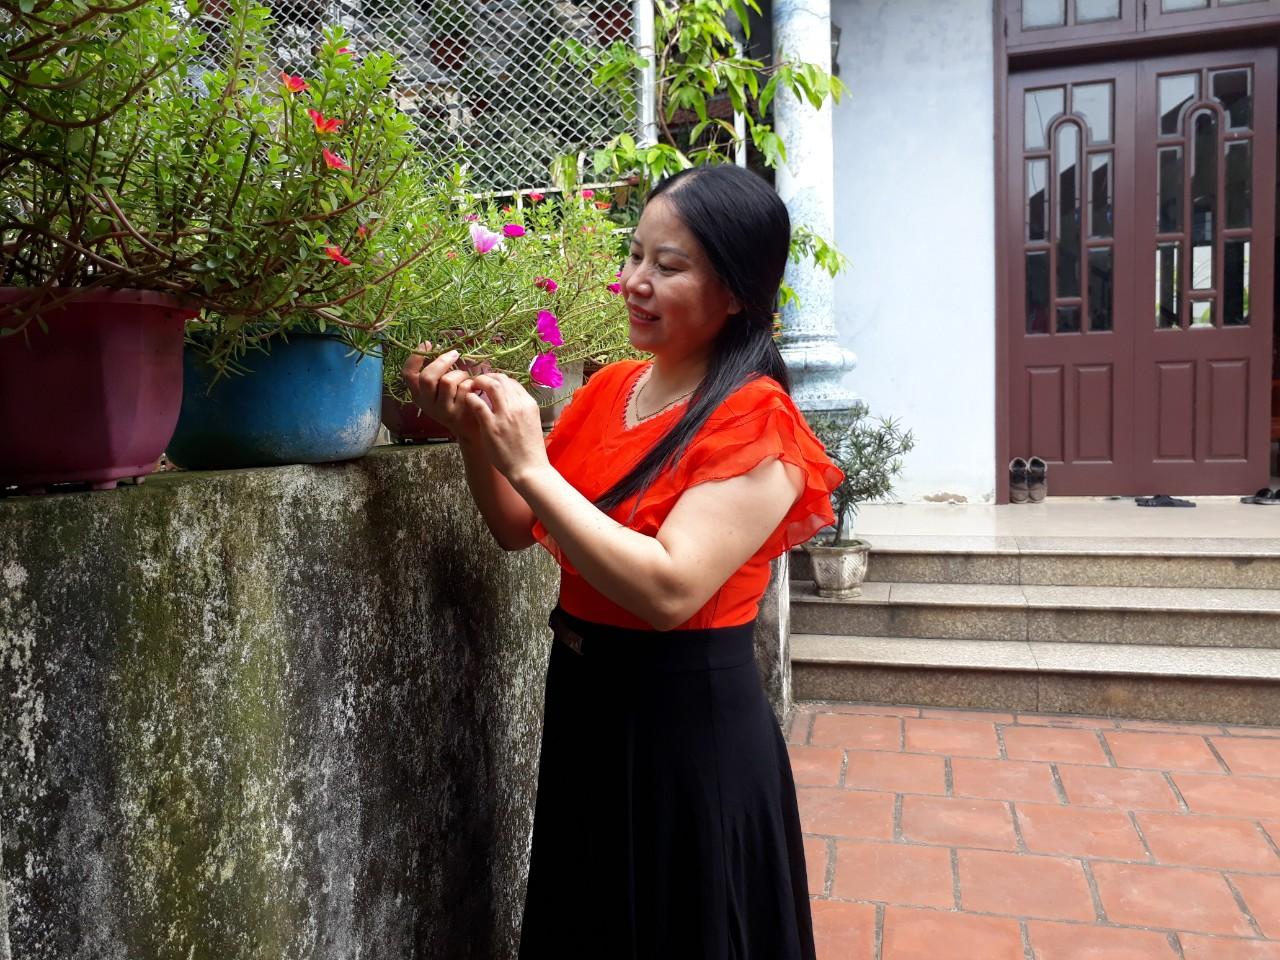 Chỉ với 50 ngàn tiền rau, bà nội trợ Hà Nội có thể mua 10 loại rau củ sau cho gia đình 4 người lớn ăn thoải mái ăn trong vòng 1 tuần - Ảnh 1.